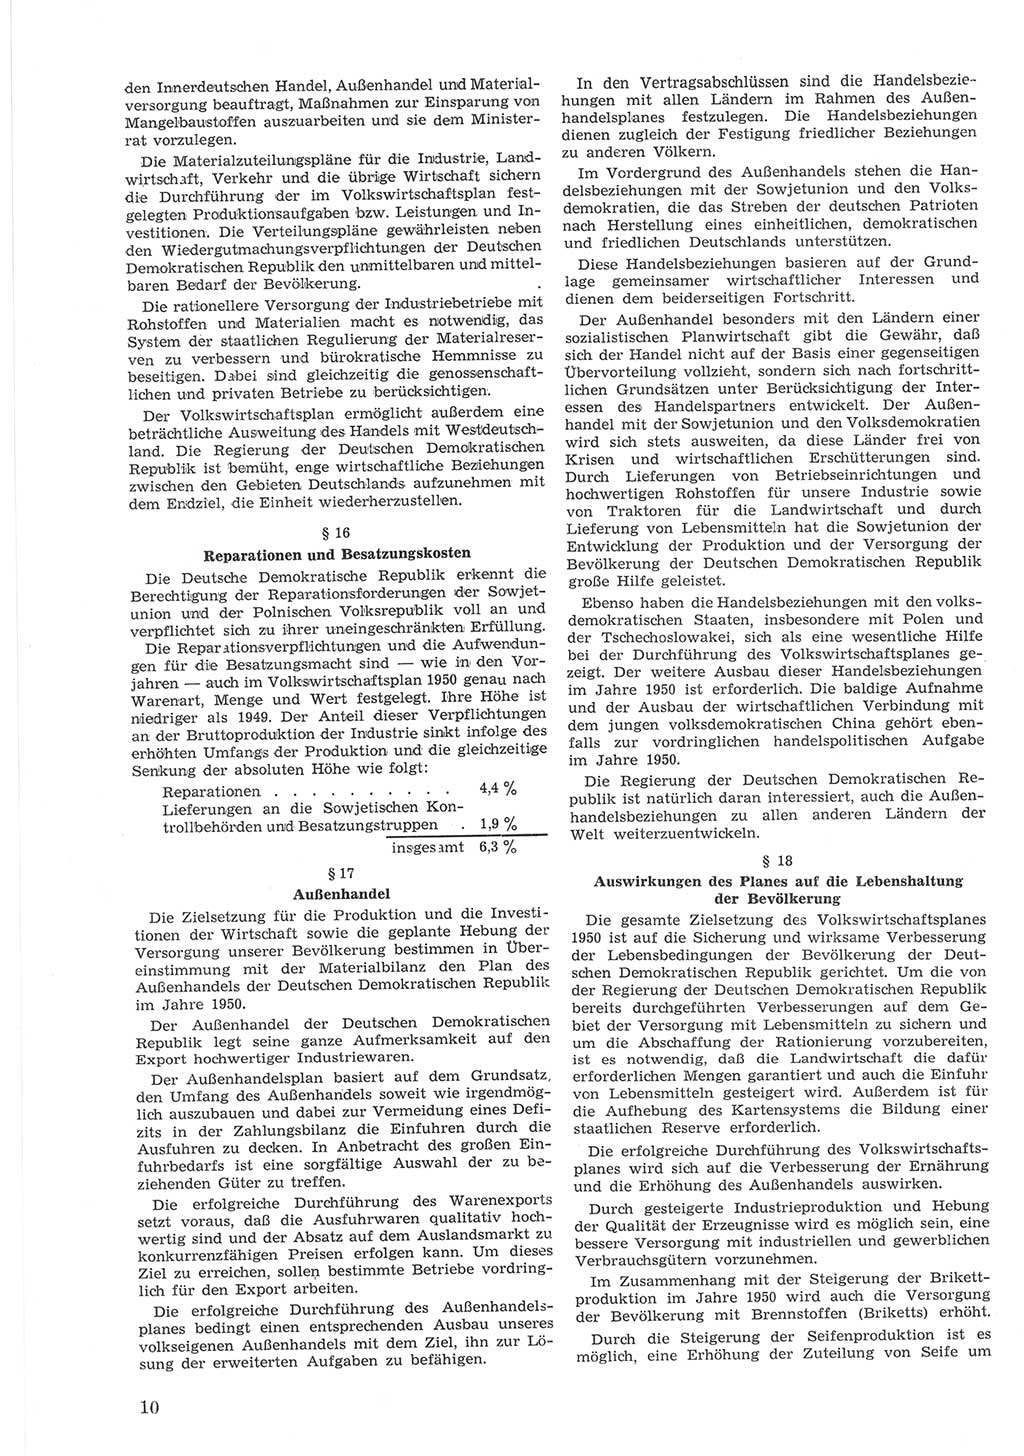 Provisorische Volkskammer (VK) der Deutschen Demokratischen Republik (DDR) 1949-1950, Dokument 610 (Prov. VK DDR 1949-1950, Dok. 610)